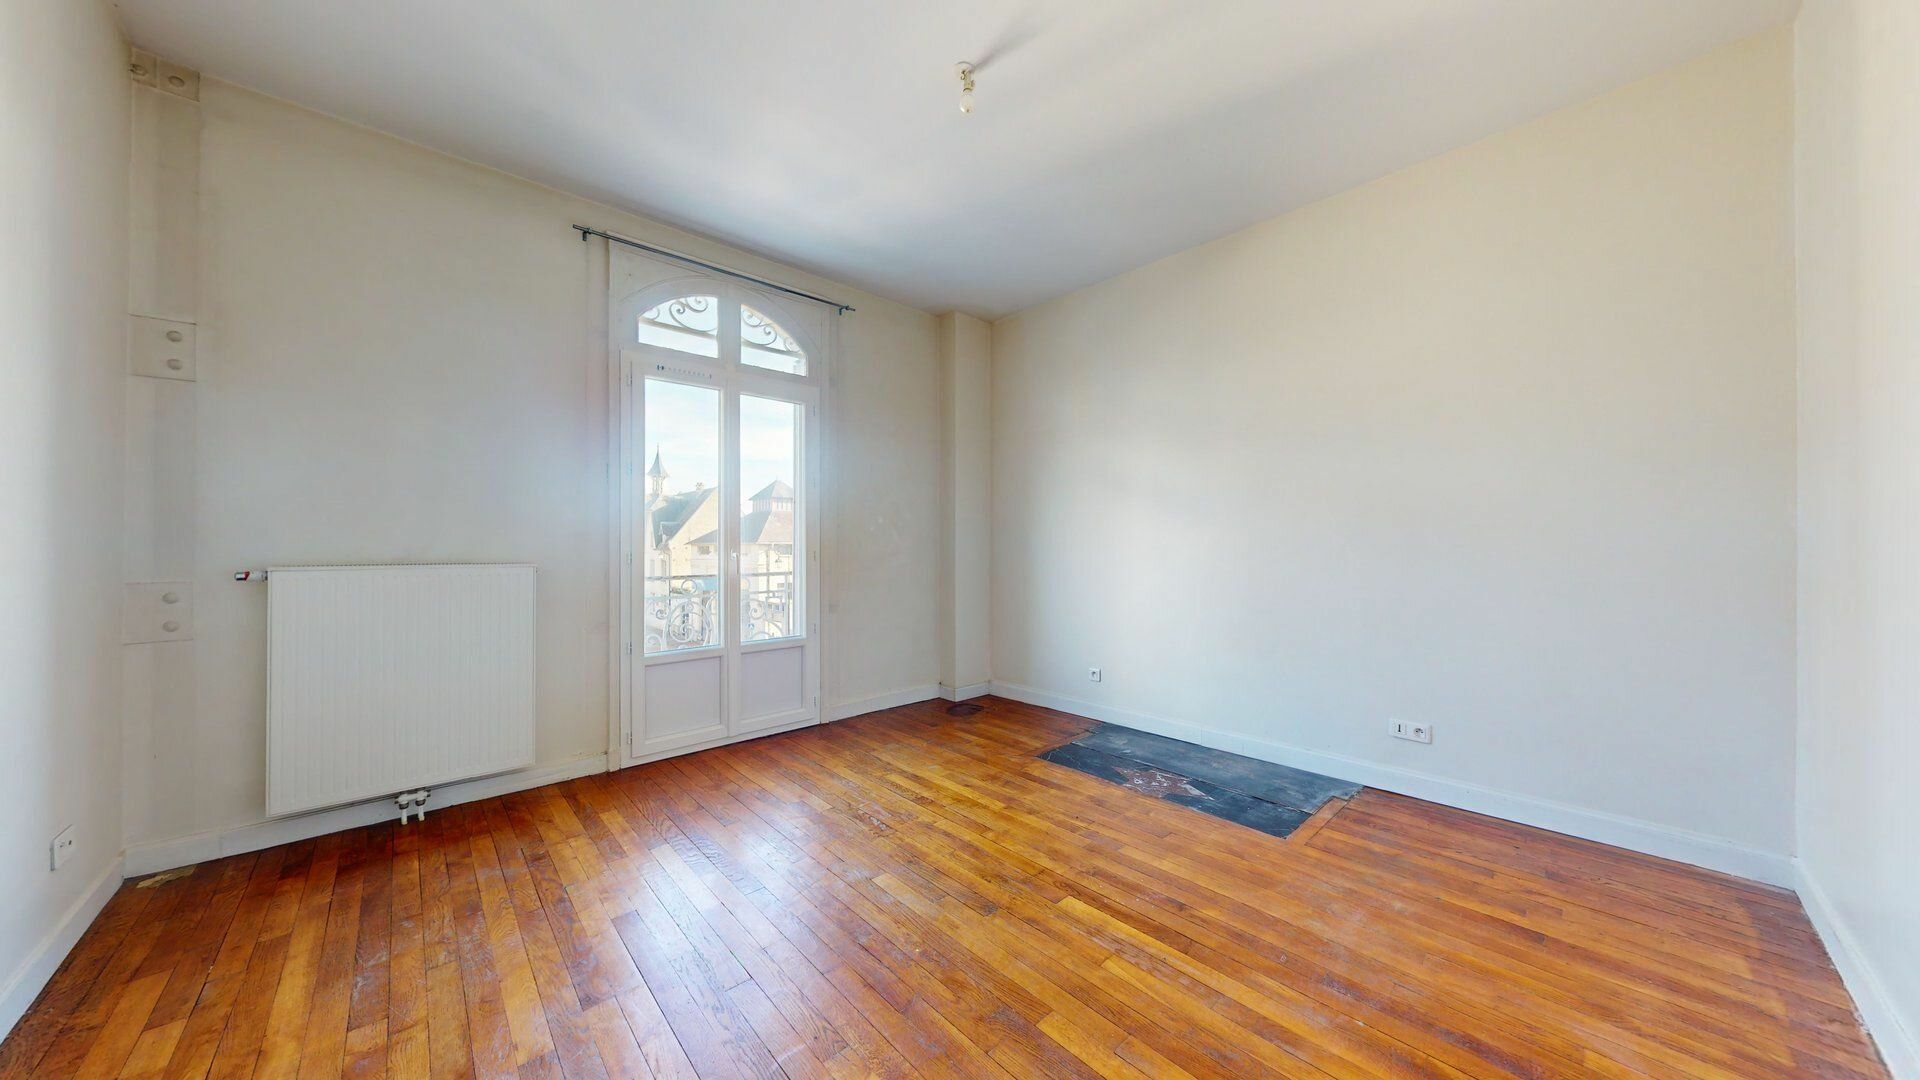 Appartement à louer 4 77.85m2 à Soissons vignette-3